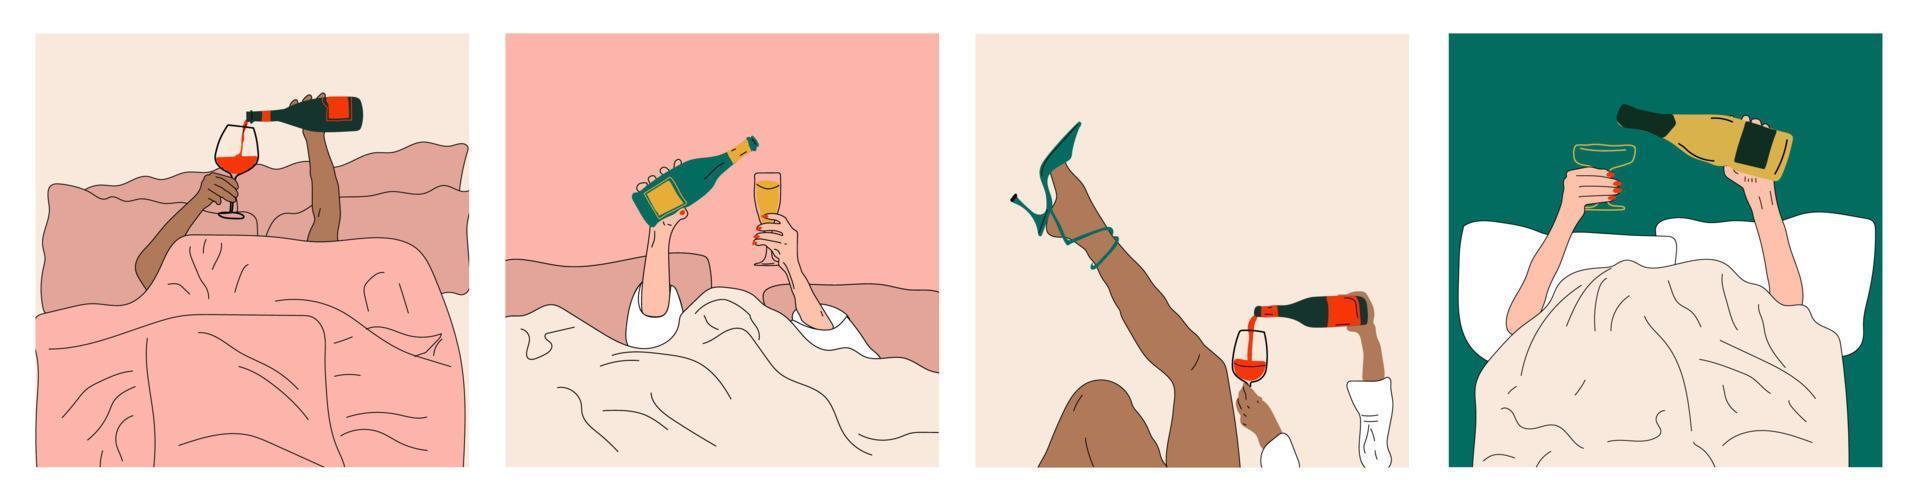 vier mode illustraties. handen gieten Champagne en wijn in een glas in bed.ochtend viering, hand- getrokken vector modieus set. elegant kunst.